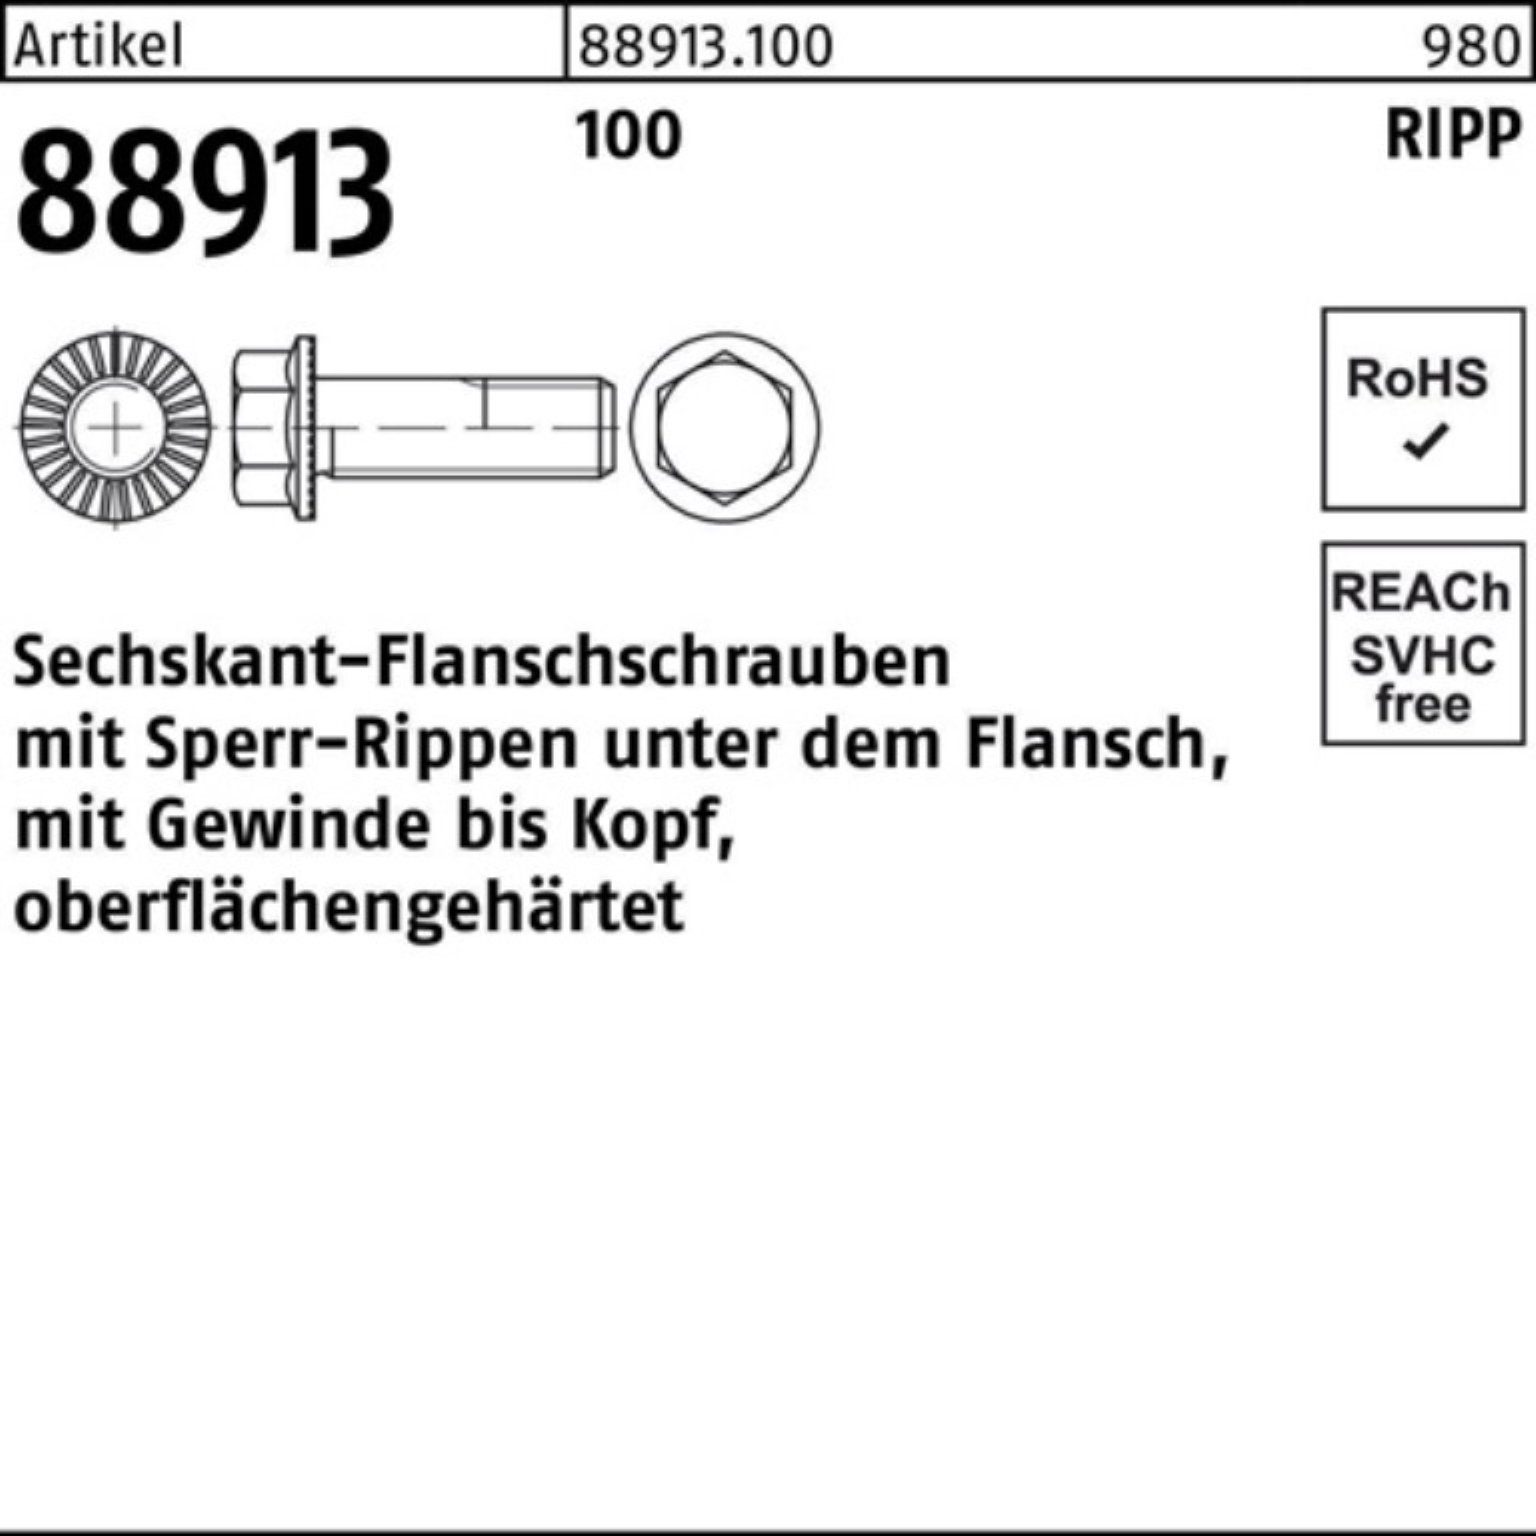 VG Reyher M12x Sperr-Ripp 100er R 20 Schraube 100 Pack 88913 Sechskantflanschschraube